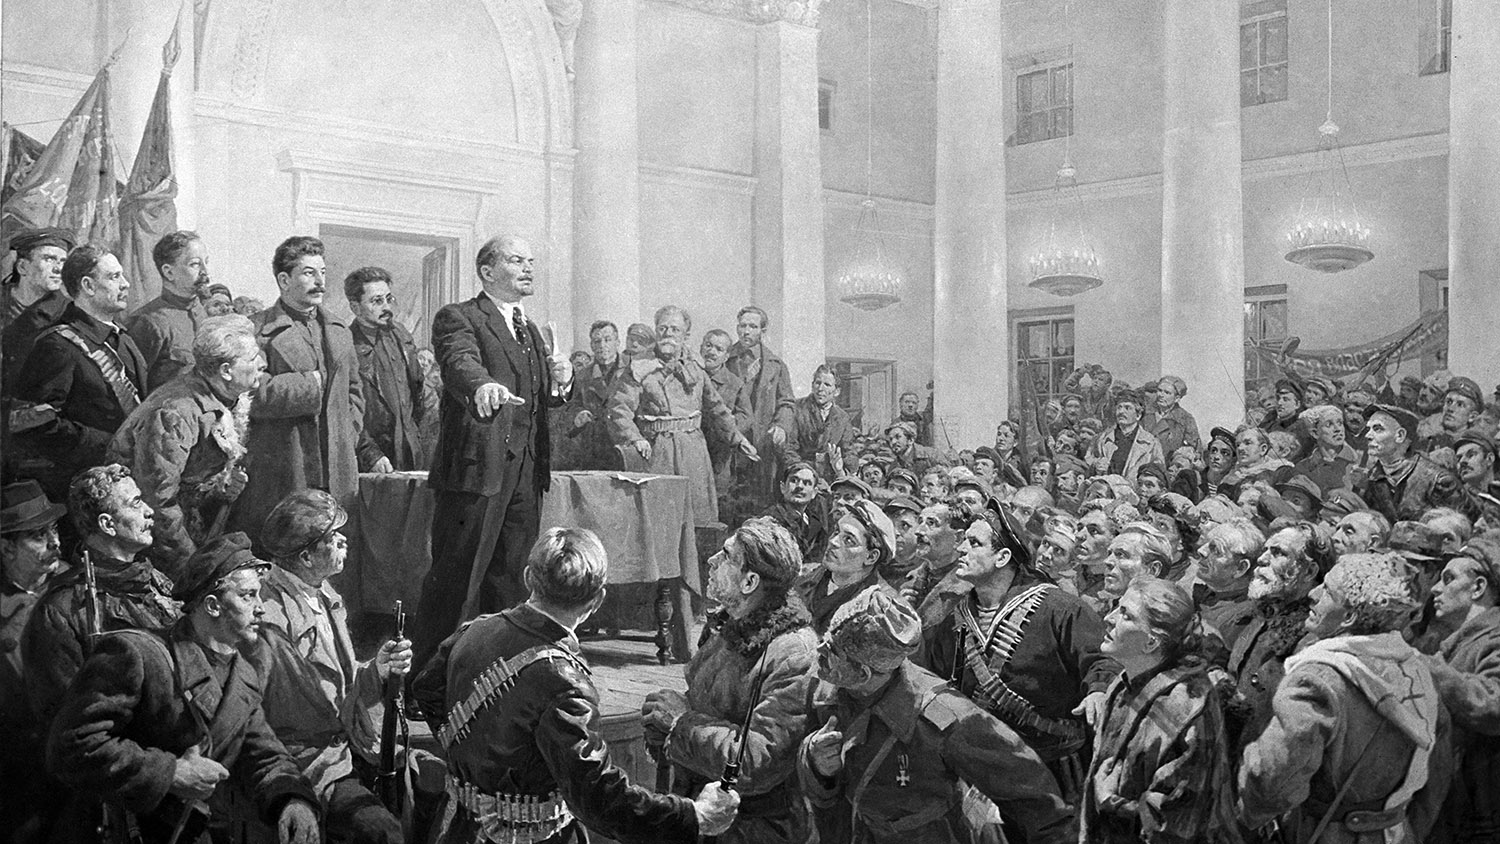 Ленин в февральской революции